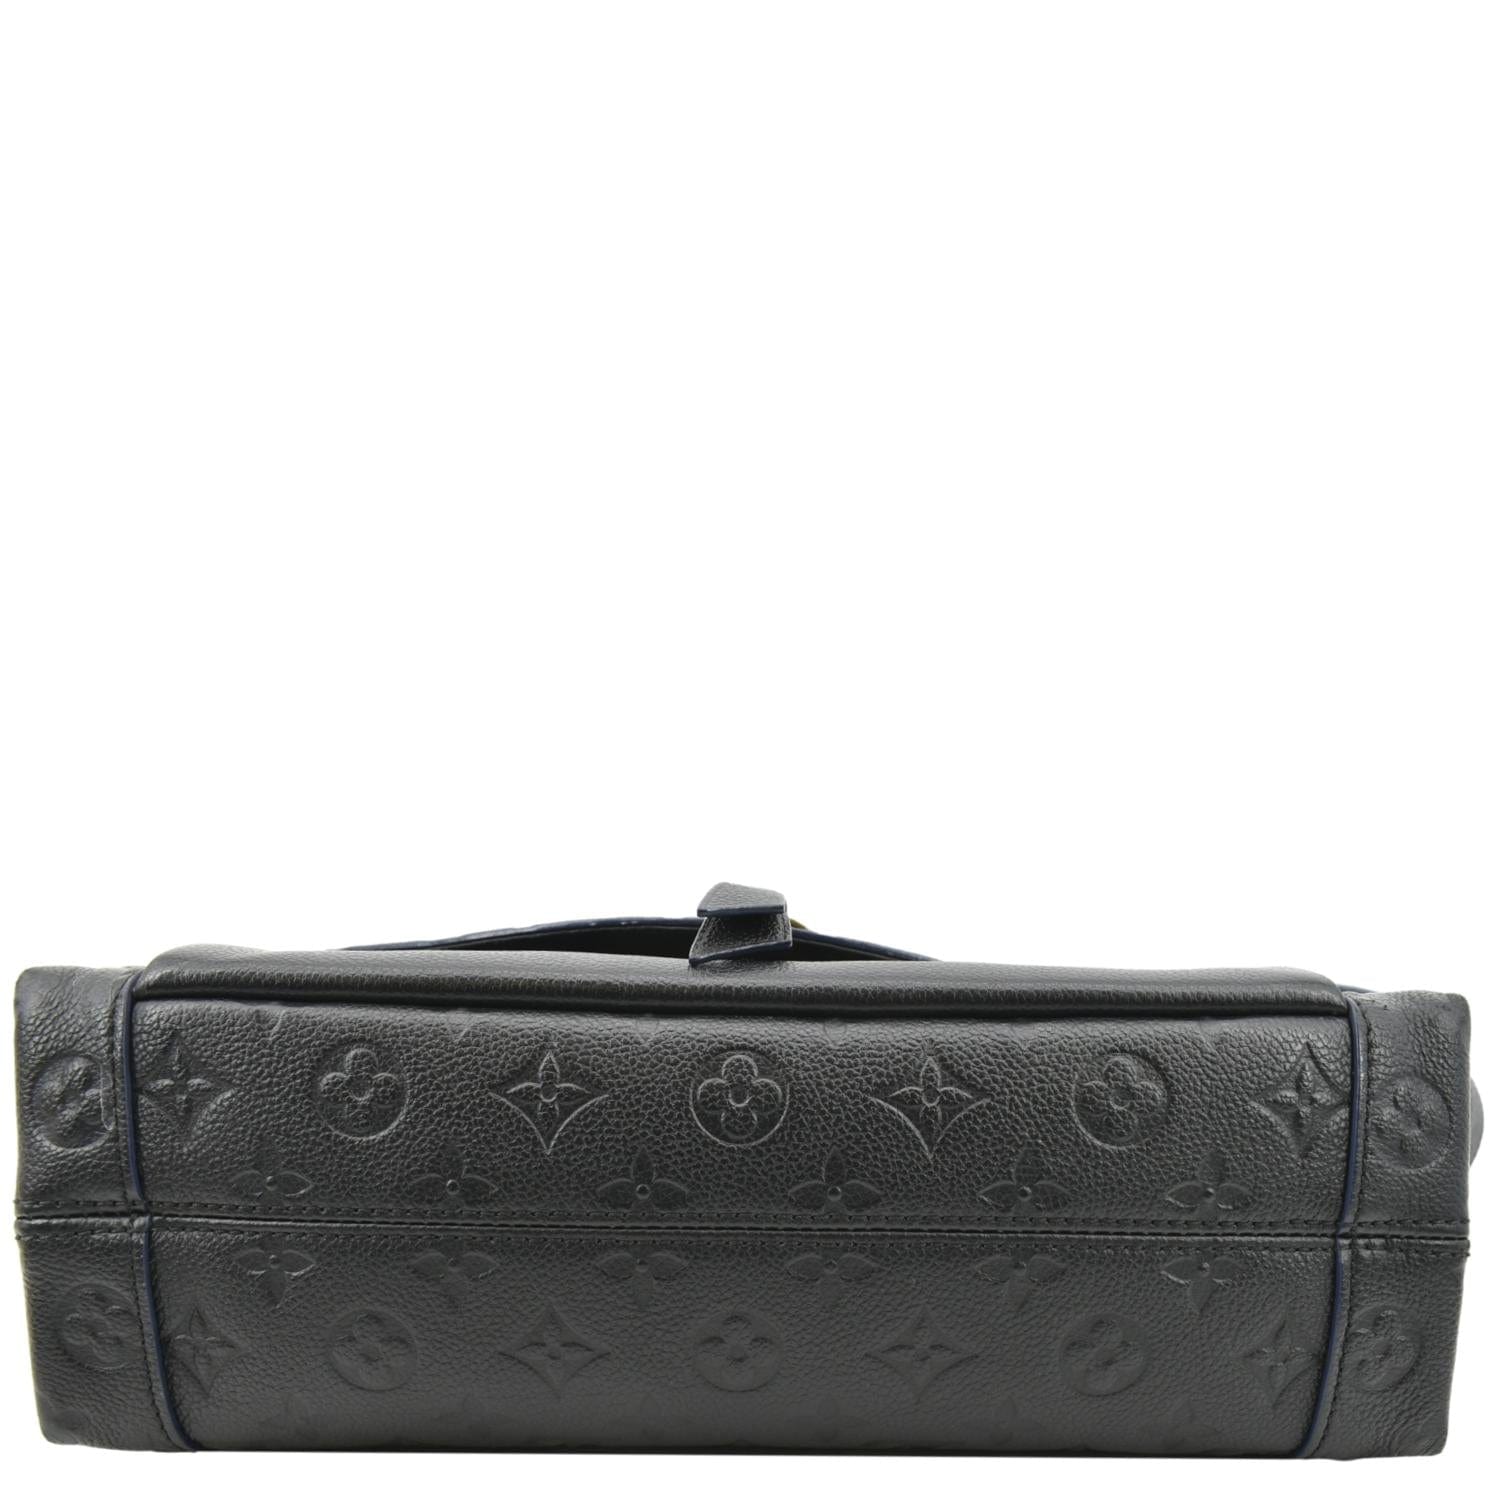 Louis Vuitton Blanche MM Noir in Monogram Empreinte Leather